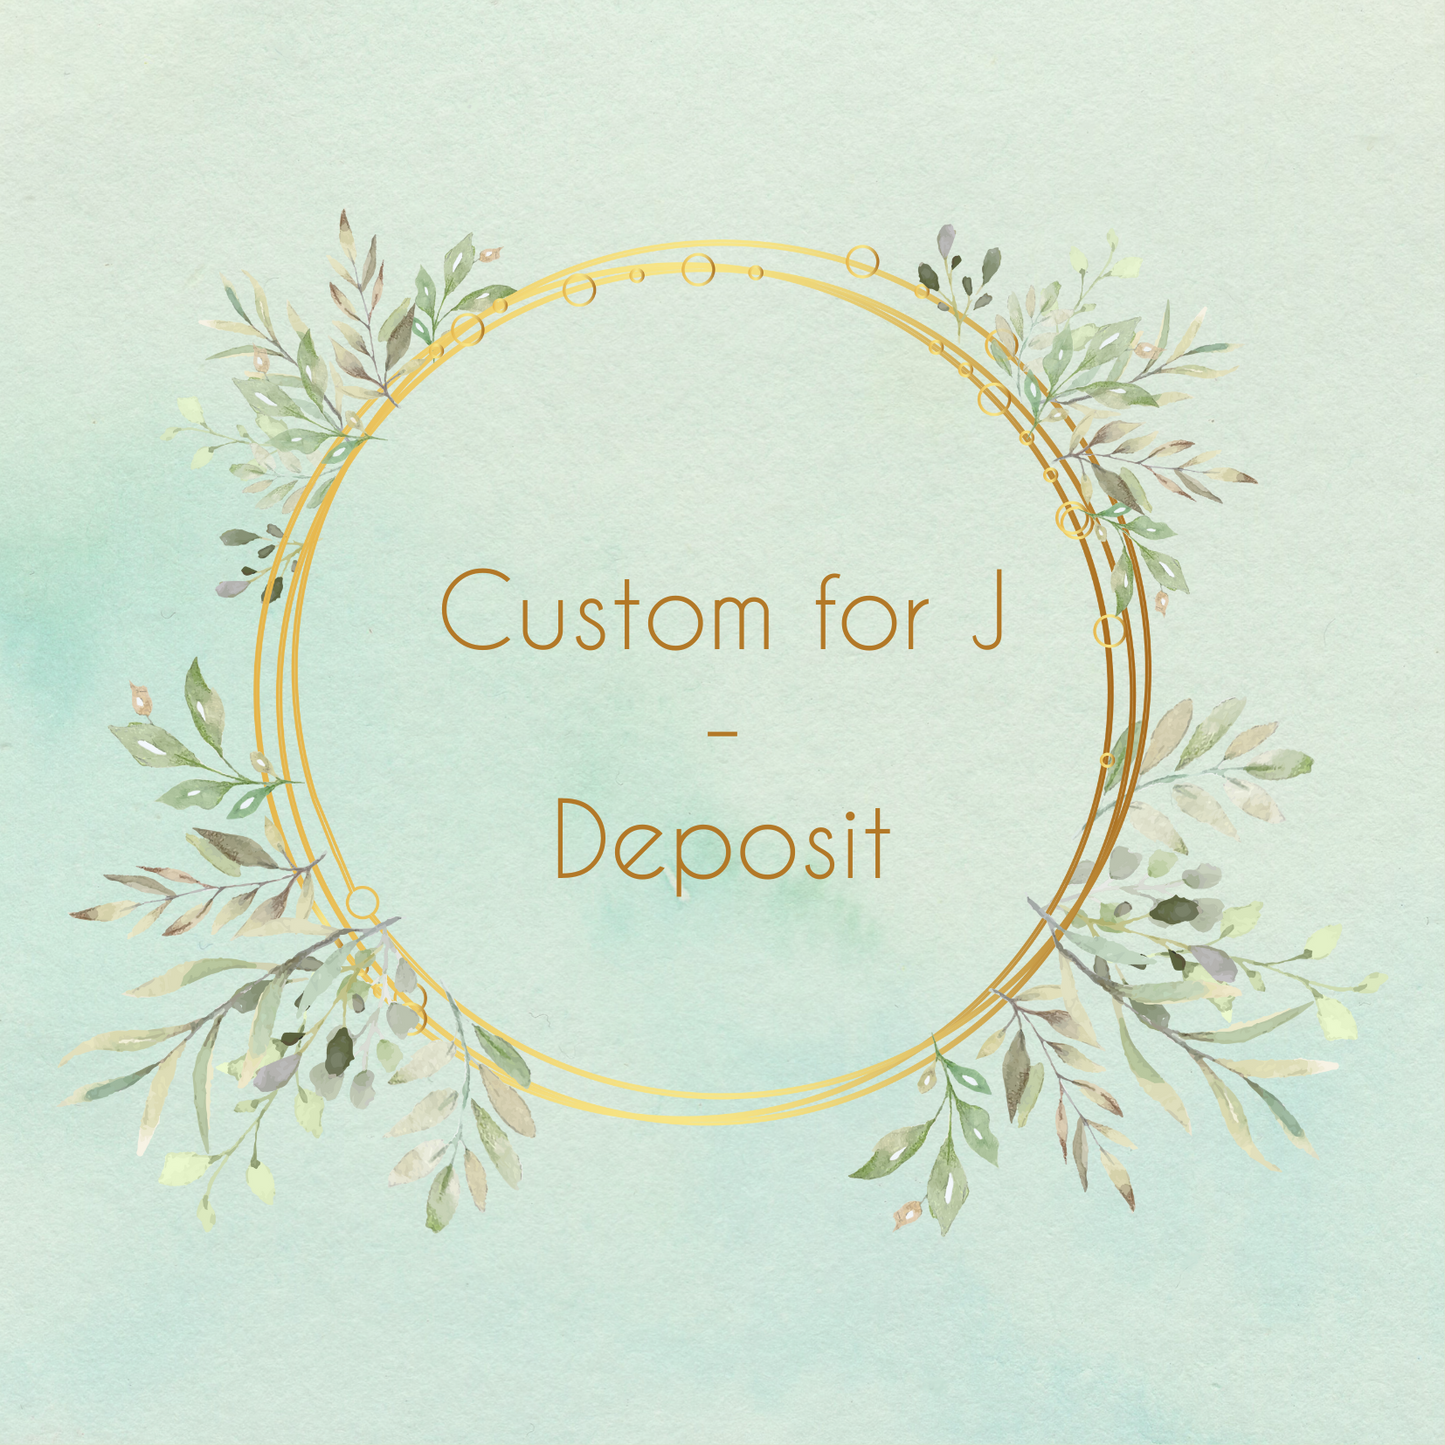 Custom for J - Deposit